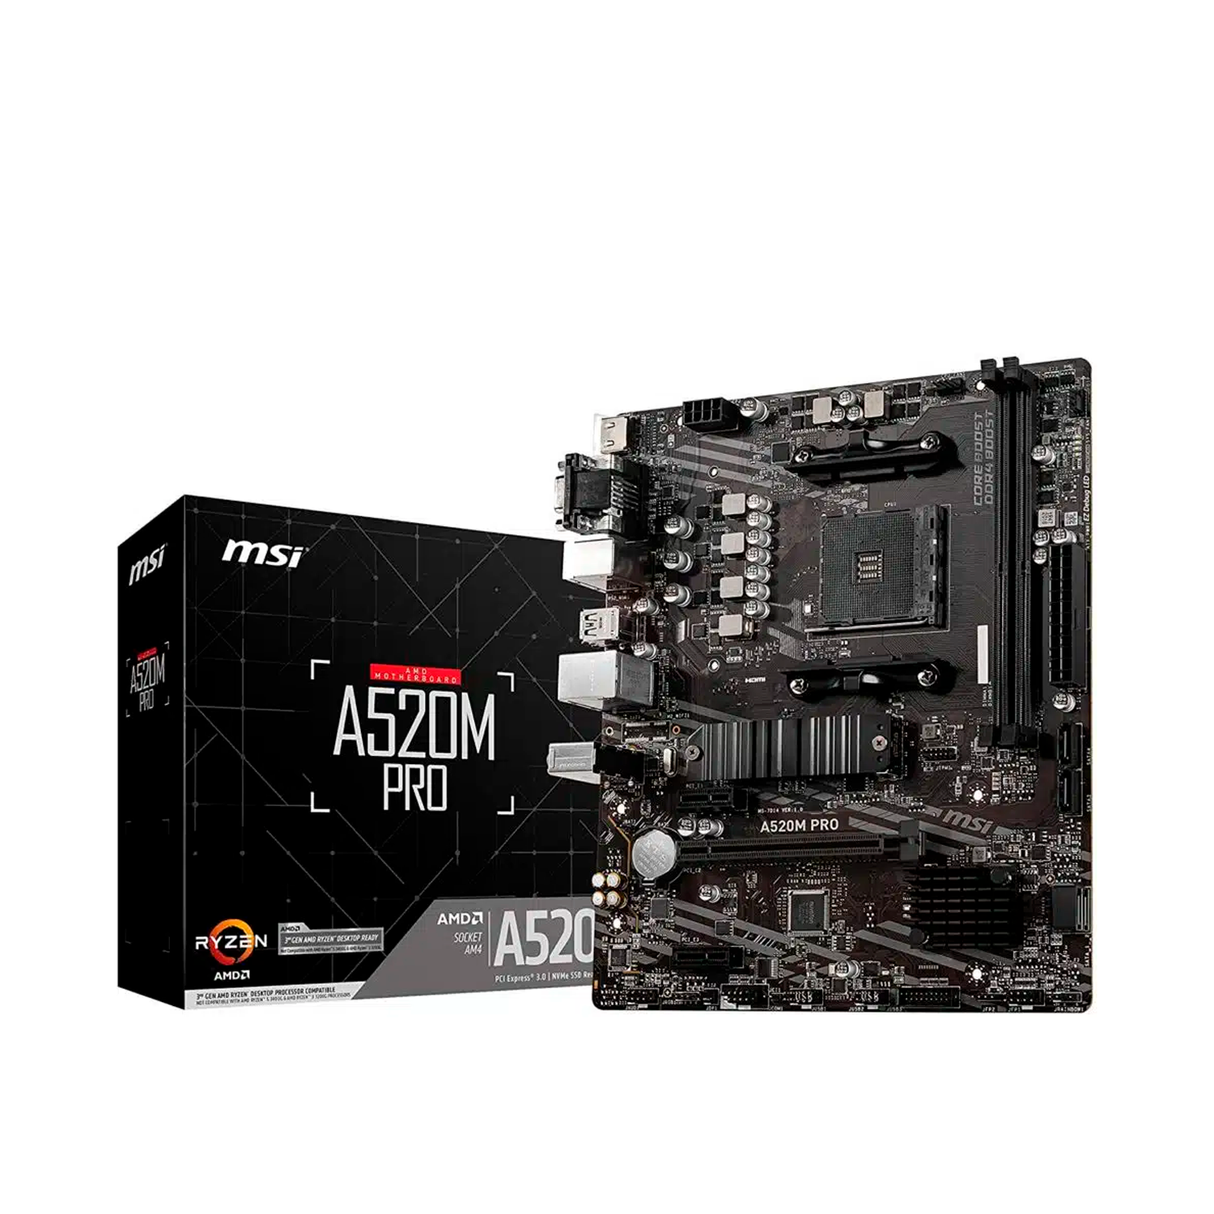 PC de Escritorio AMD Ryzen 5 Pro 4650G RAM 8GB Disco 480GB 2.5" SSD Monitor 21.5" + kit teclado y mouse